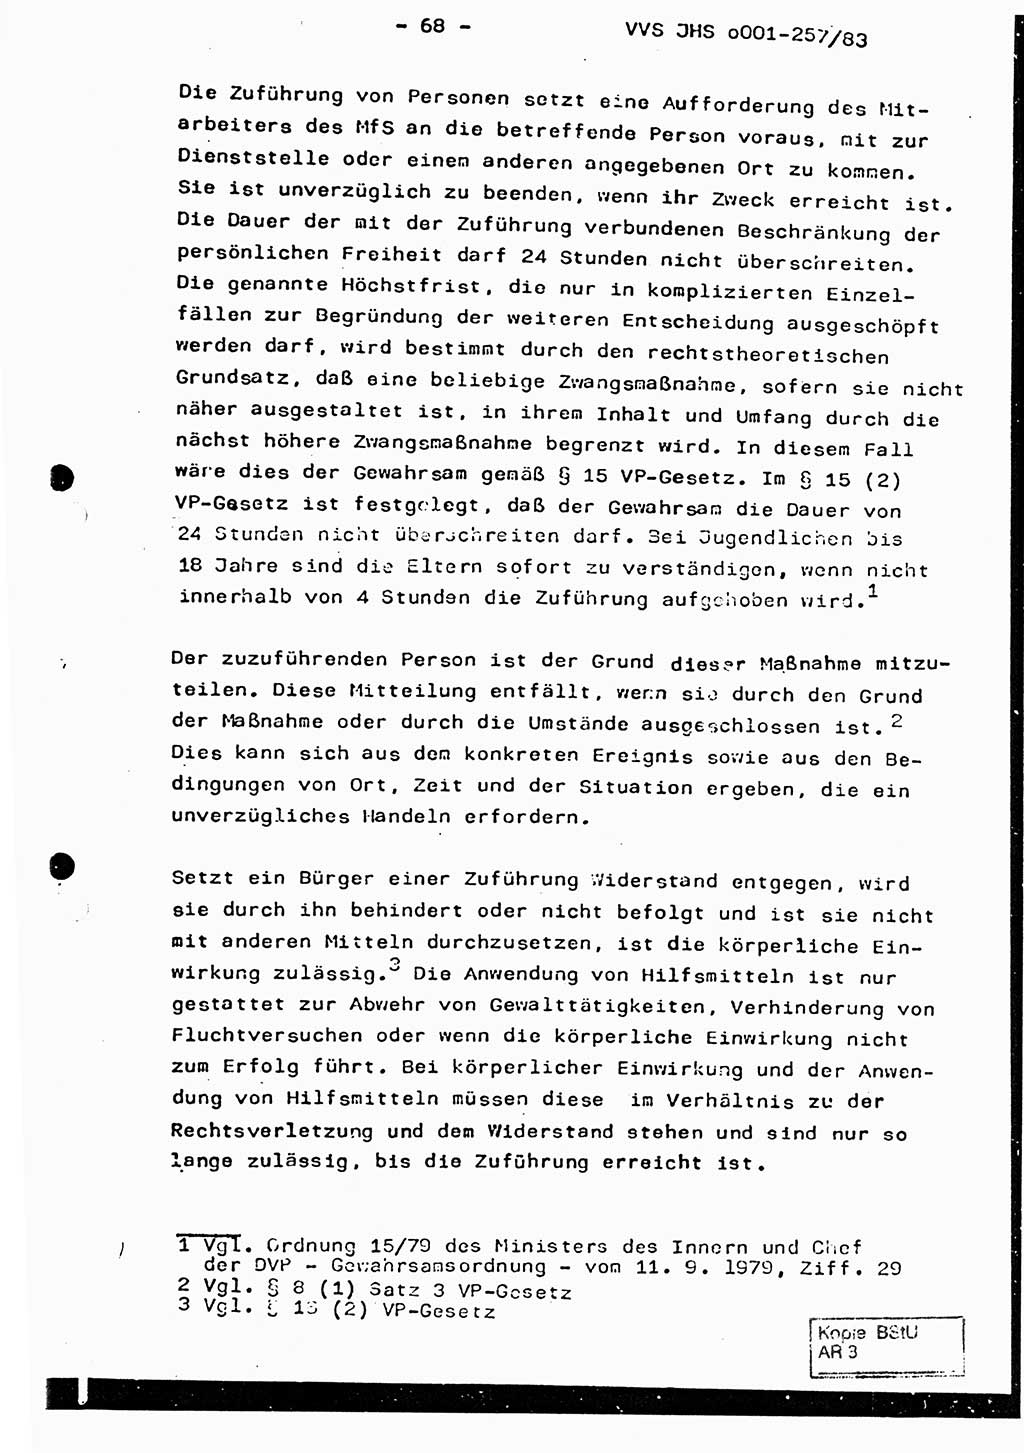 Dissertation, Oberst Helmut Lubas (BV Mdg.), Oberstleutnant Manfred Eschberger (HA IX), Oberleutnant Hans-Jürgen Ludwig (JHS), Ministerium für Staatssicherheit (MfS) [Deutsche Demokratische Republik (DDR)], Juristische Hochschule (JHS), Vertrauliche Verschlußsache (VVS) o001-257/83, Potsdam 1983, Seite 68 (Diss. MfS DDR JHS VVS o001-257/83 1983, S. 68)